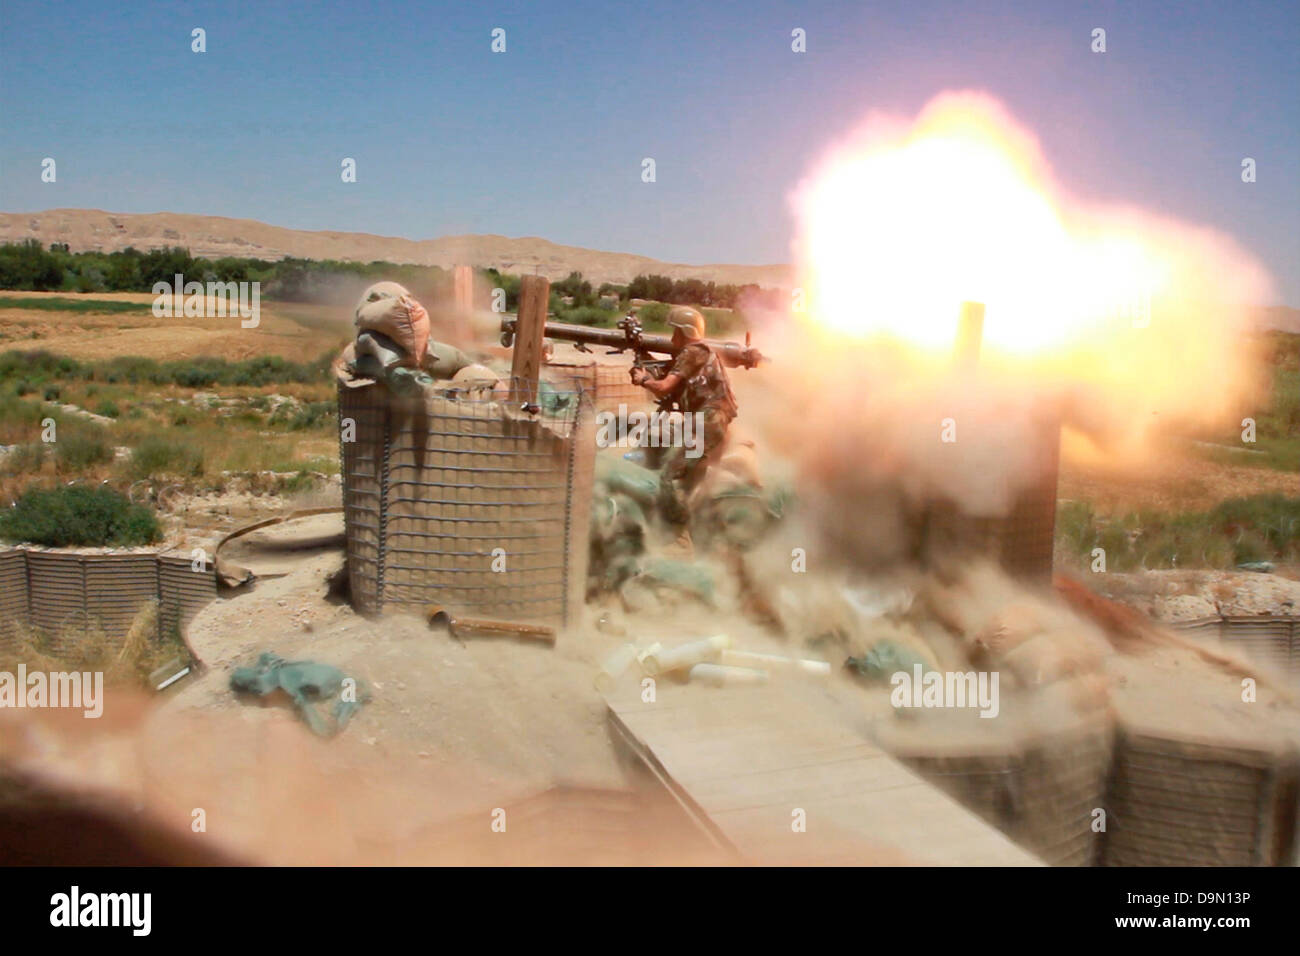 Un soldat de l'Armée nationale afghane de fabrication russe tire un canon sans recul SPG-9 à des insurgés talibans depuis le toit d'une base de patrouille, le 29 mai 2013 dans le district de Sangin, dans la province d'Helmand, en Afghanistan. Banque D'Images